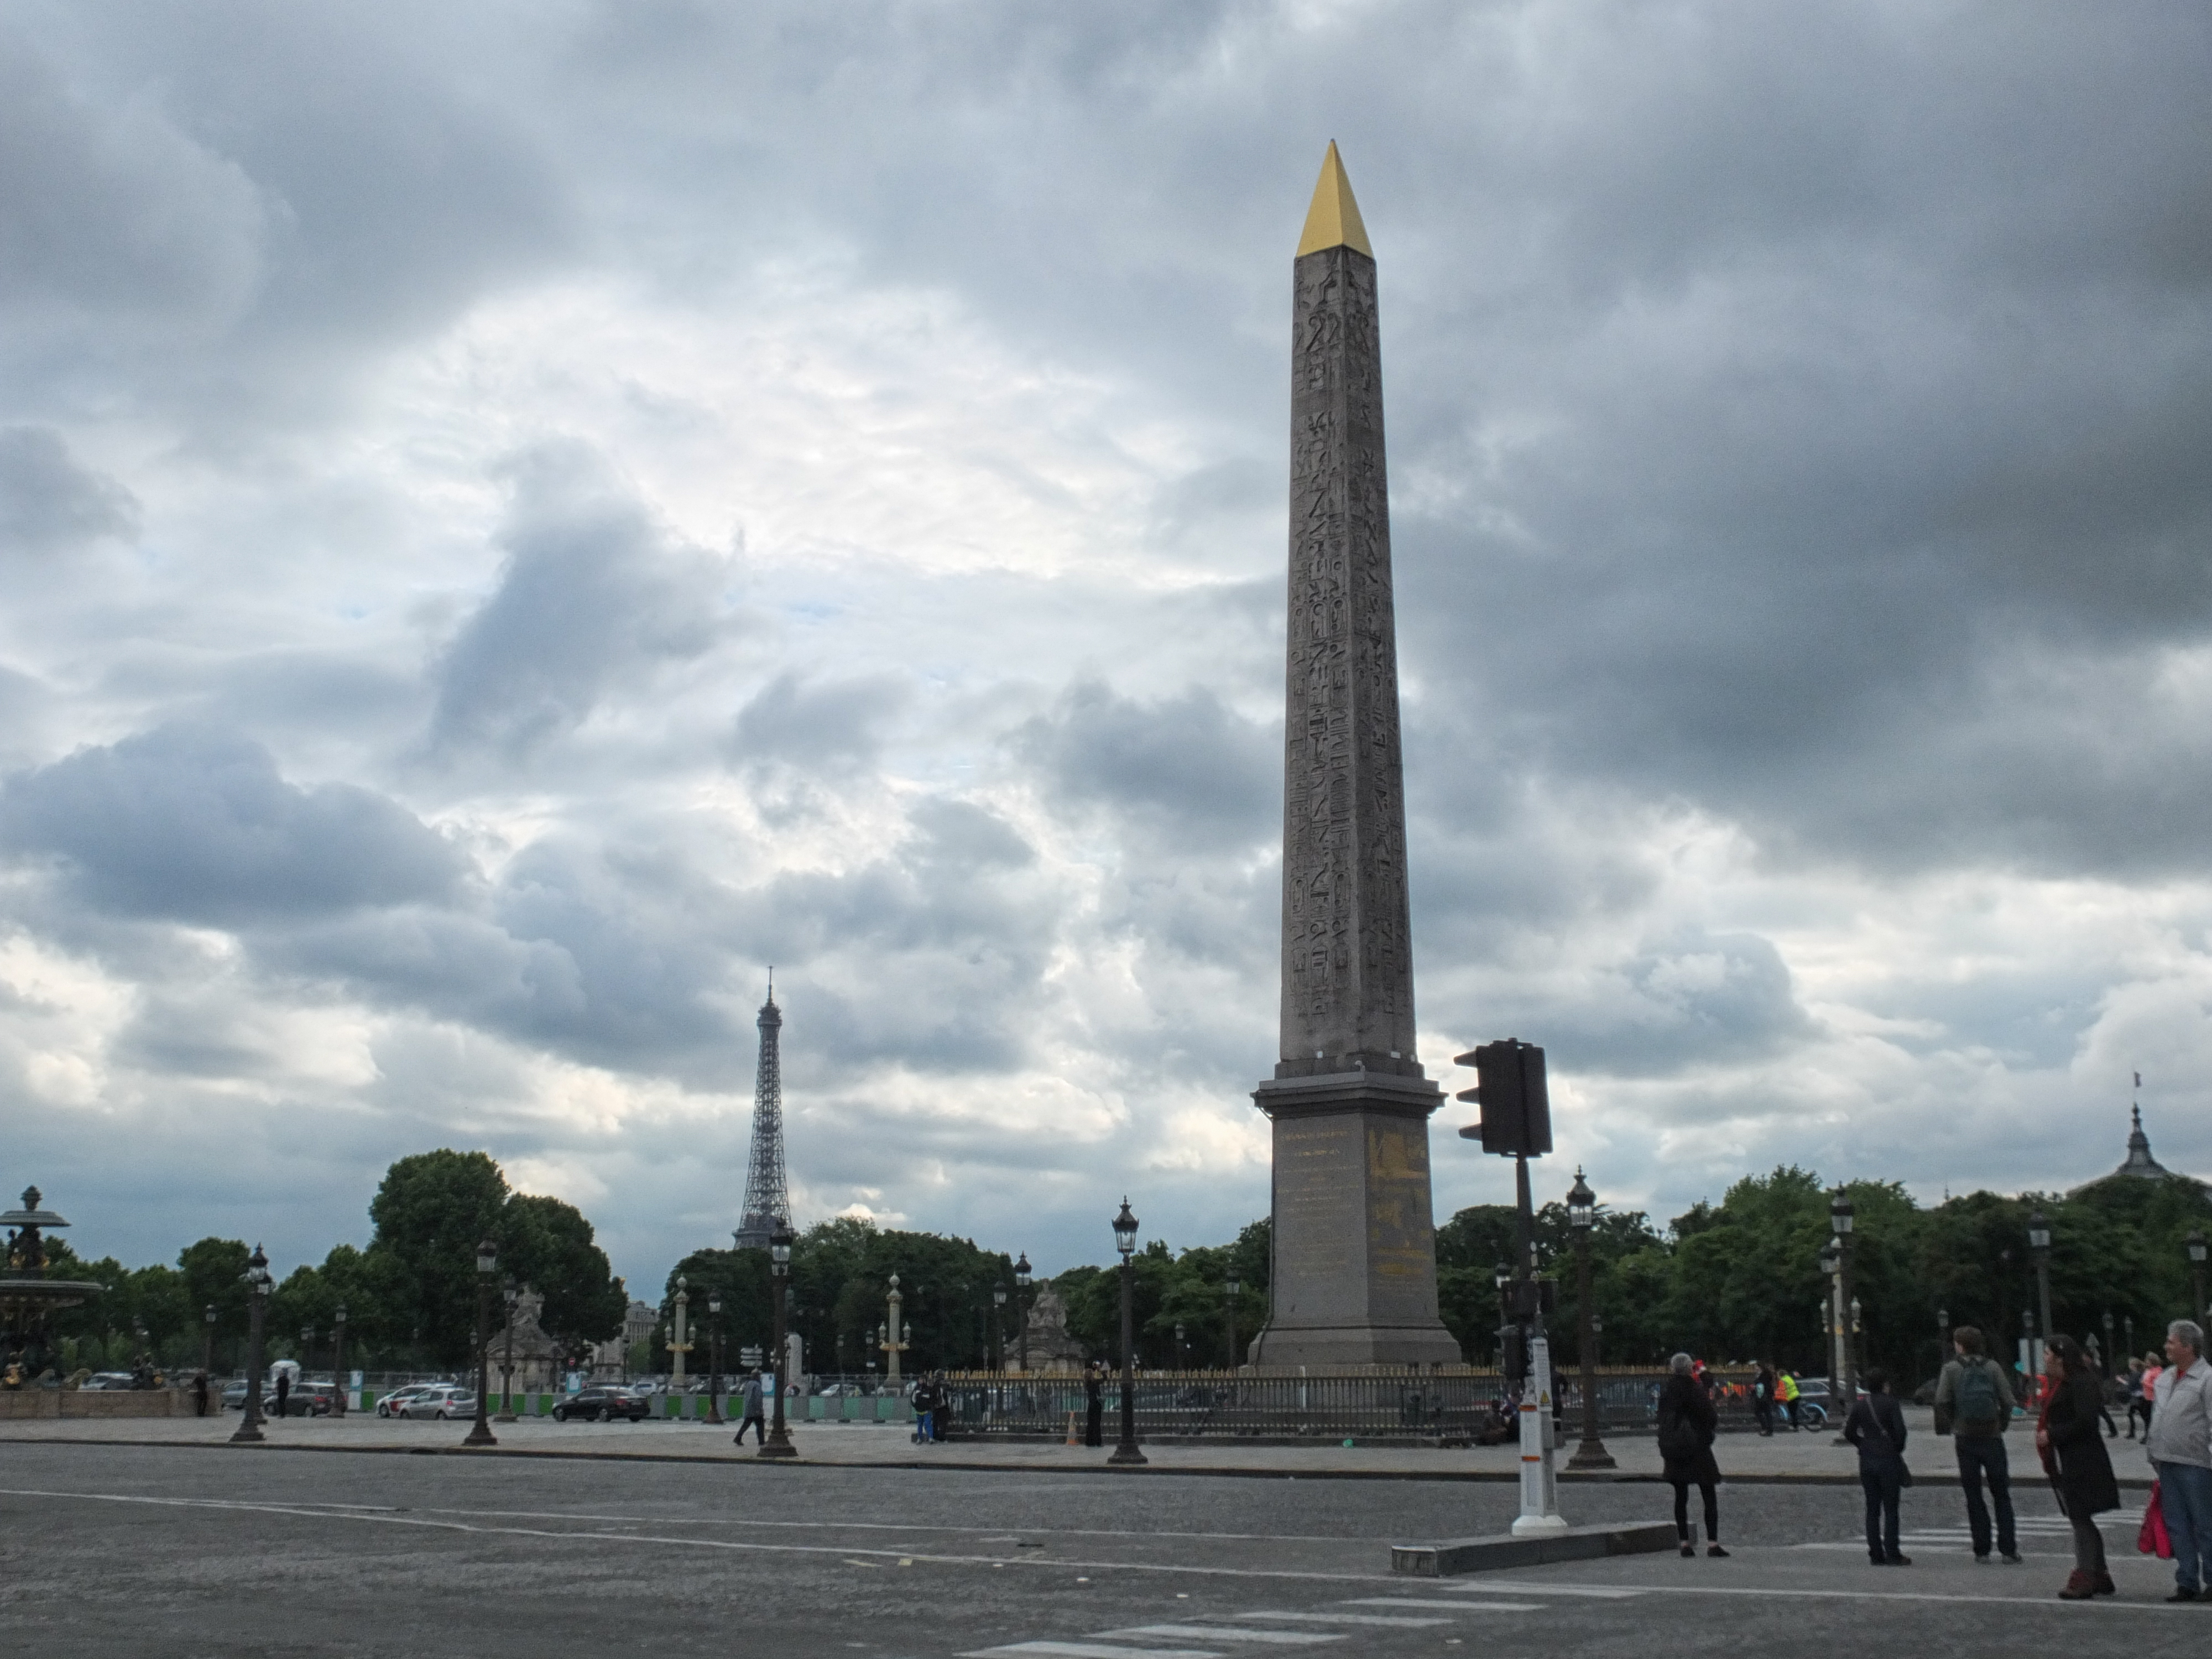 a tall stone obelisk in Place de la Concorde